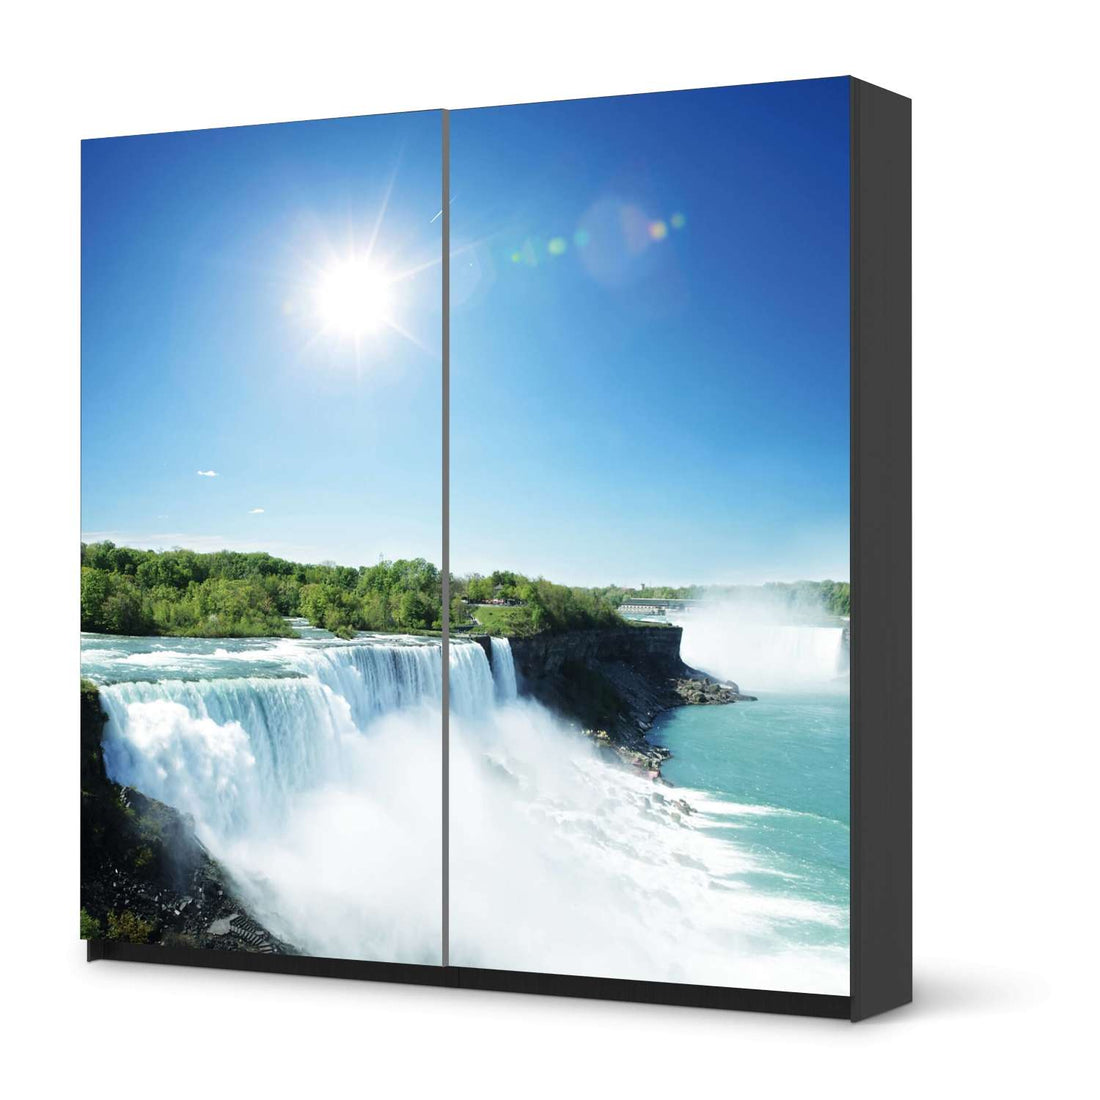 Möbel Klebefolie Niagara Falls - IKEA Pax Schrank 201 cm Höhe - Schiebetür - schwarz